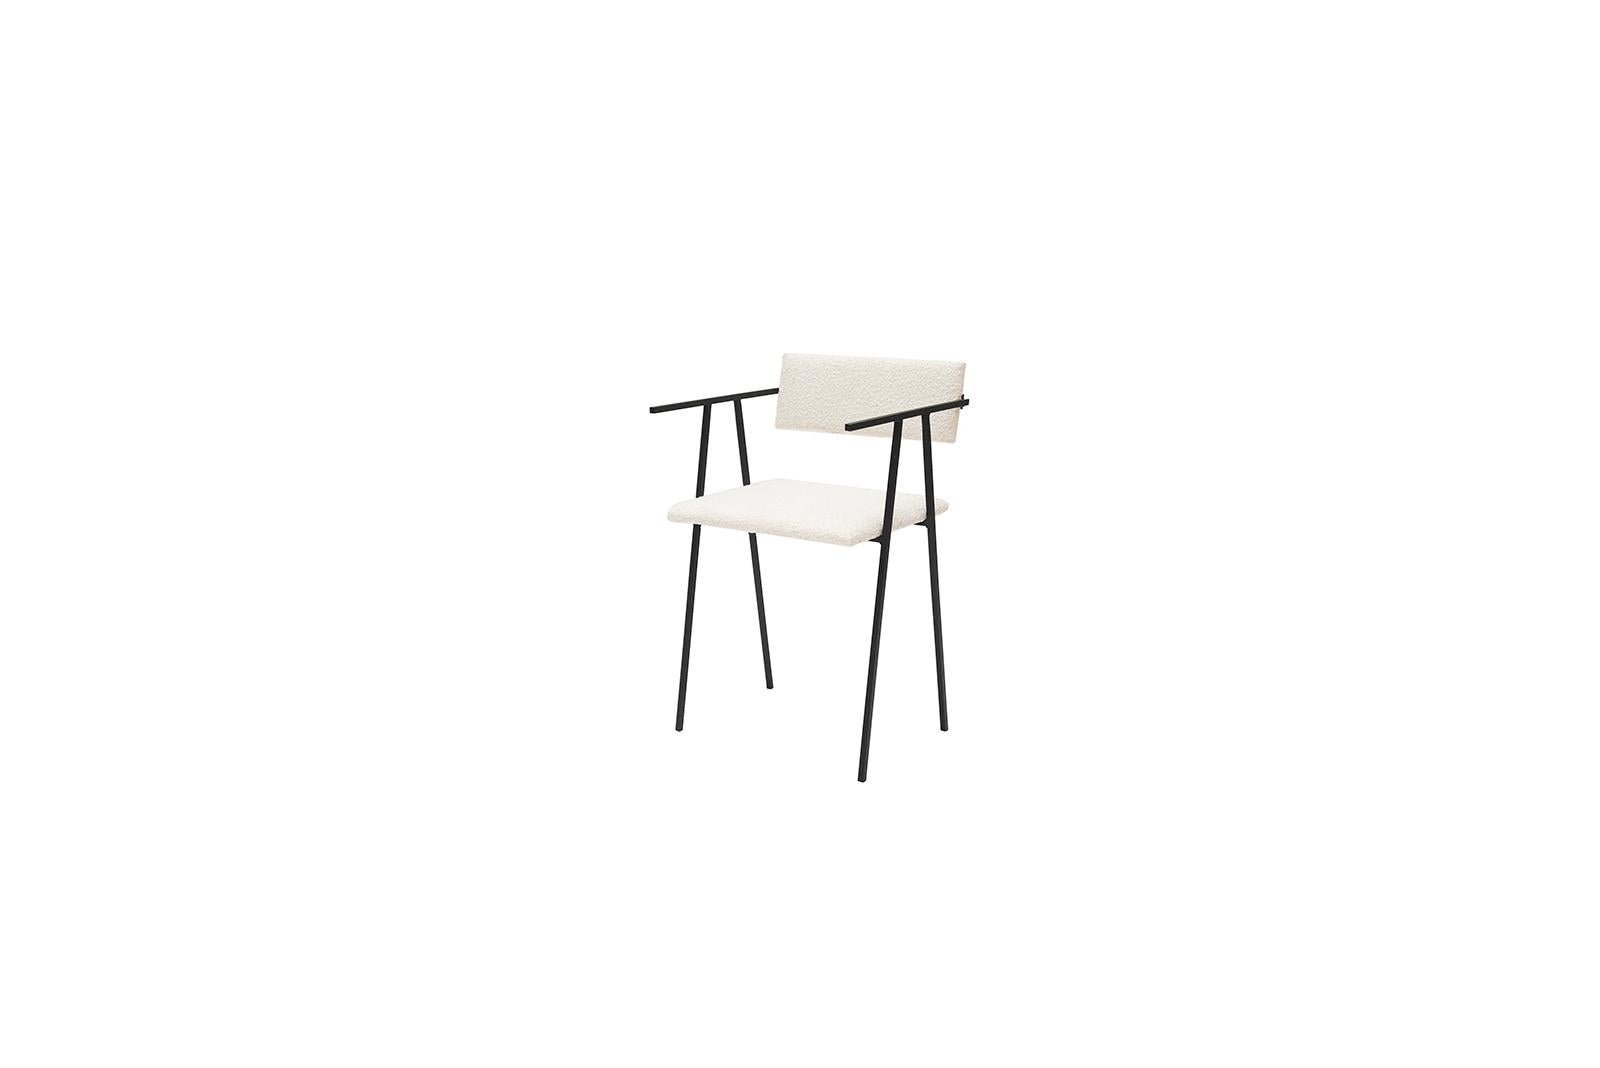 Weißer Stuhl Object 058 von NG Design.
Abmessungen: T45 x B42 x H75 cm.
MATERIAL: pulverbeschichteter Stahl, Boucle-Polsterung.

Auch verfügbar: Alle Objekte sind auf Anfrage in verschiedenen MATERIALEN und Farben erhältlich. 

Object058 ist ein